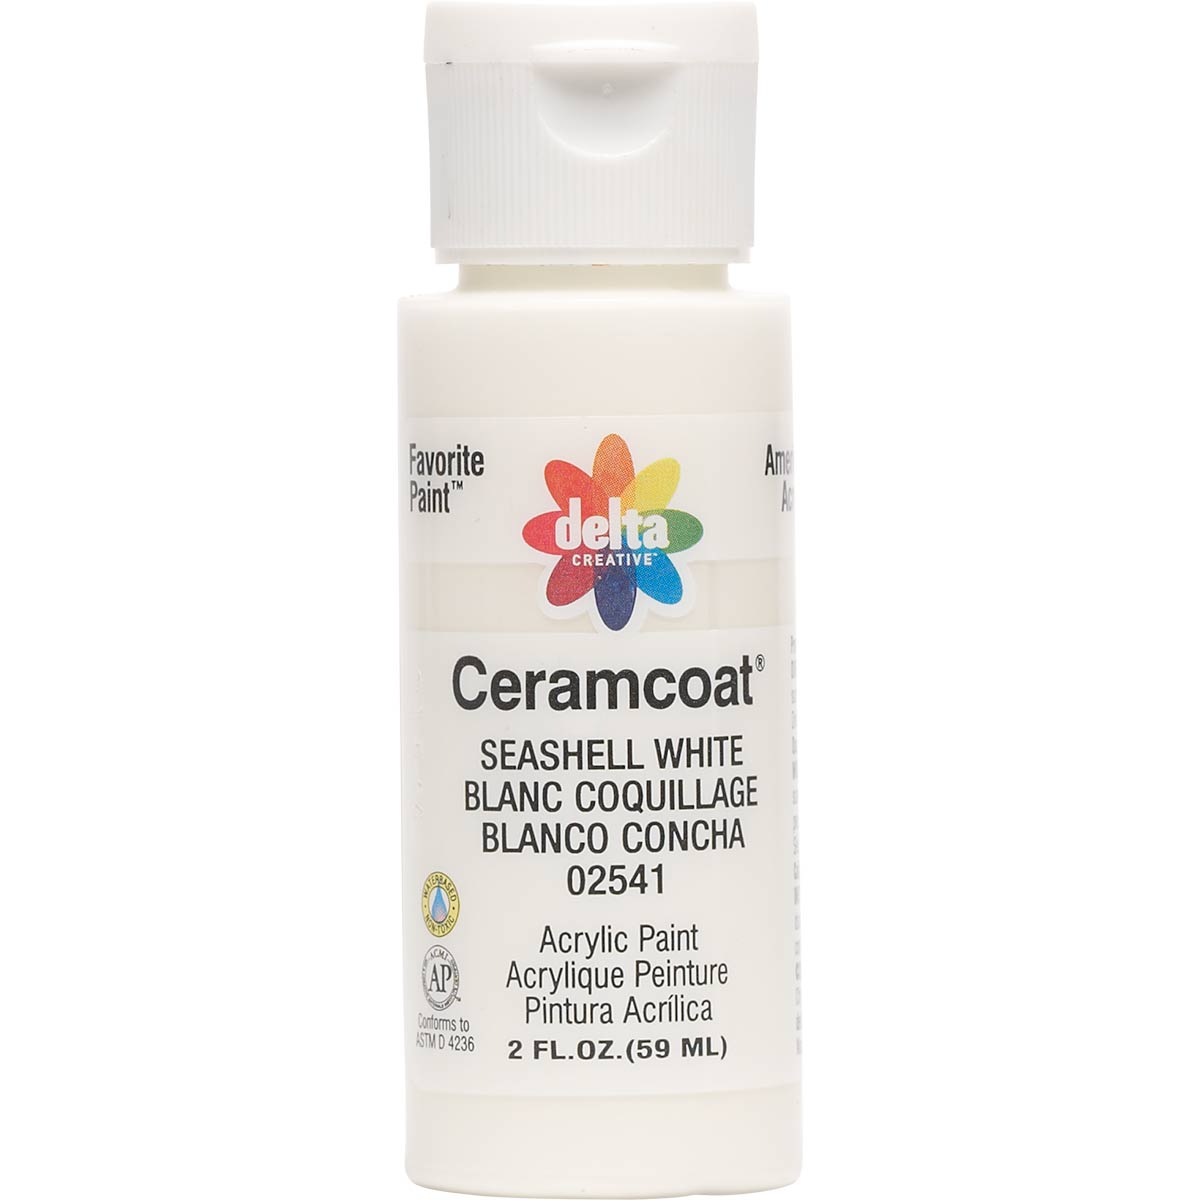 Delta Ceramcoat Acrylic Paint - Seashell White, 2 oz. - 025410202W